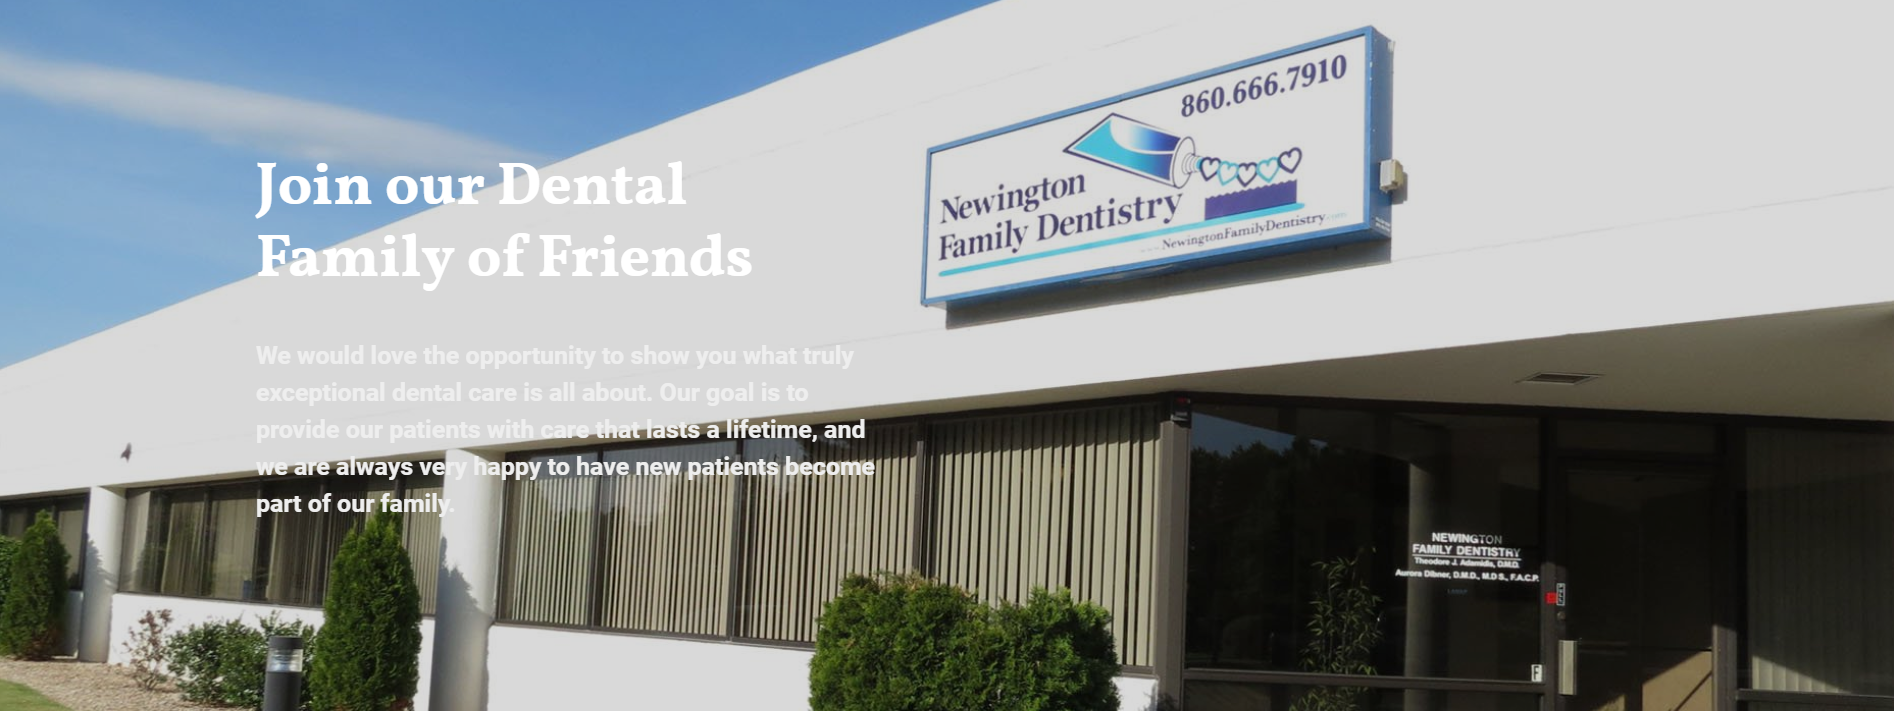 Newington Family Dentistry